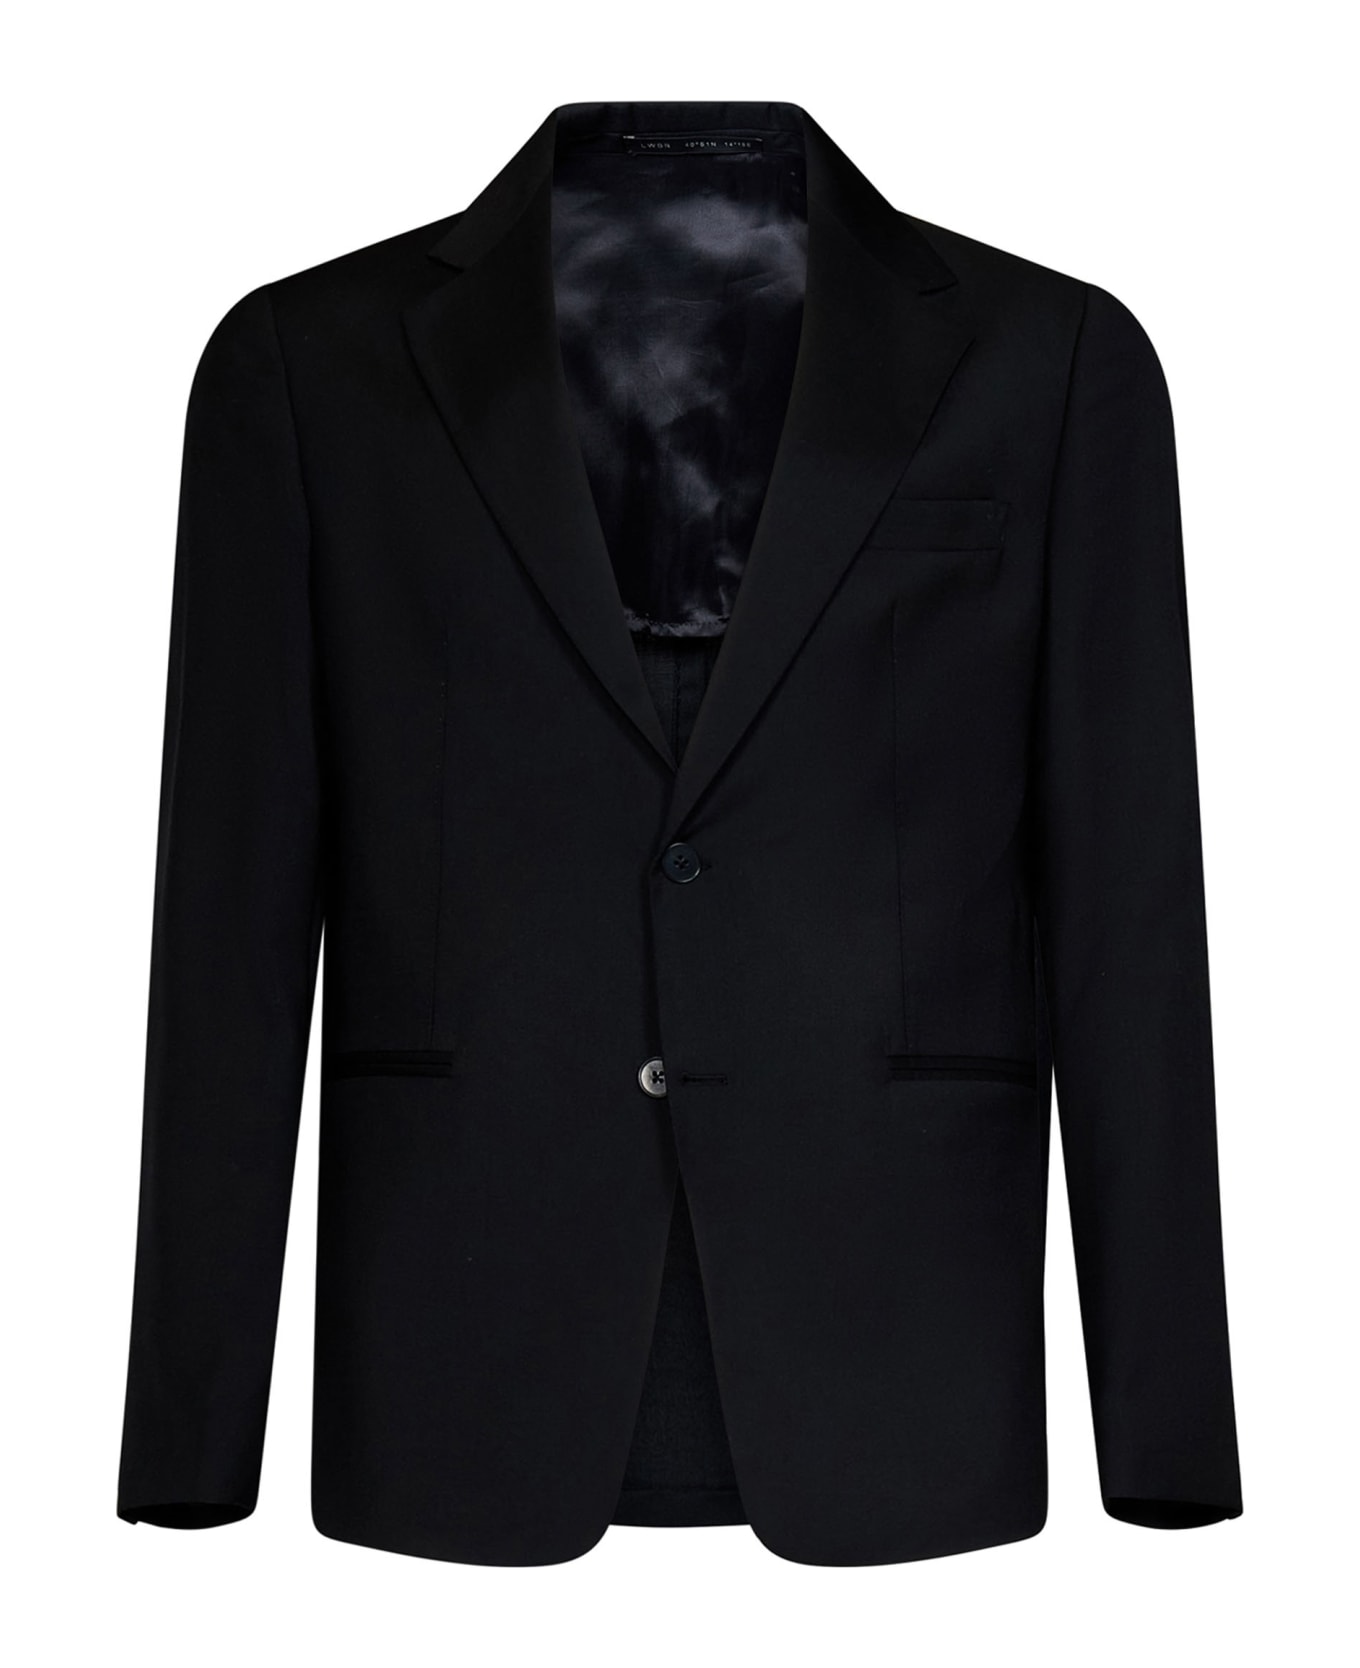 Low Brand Suit - Black